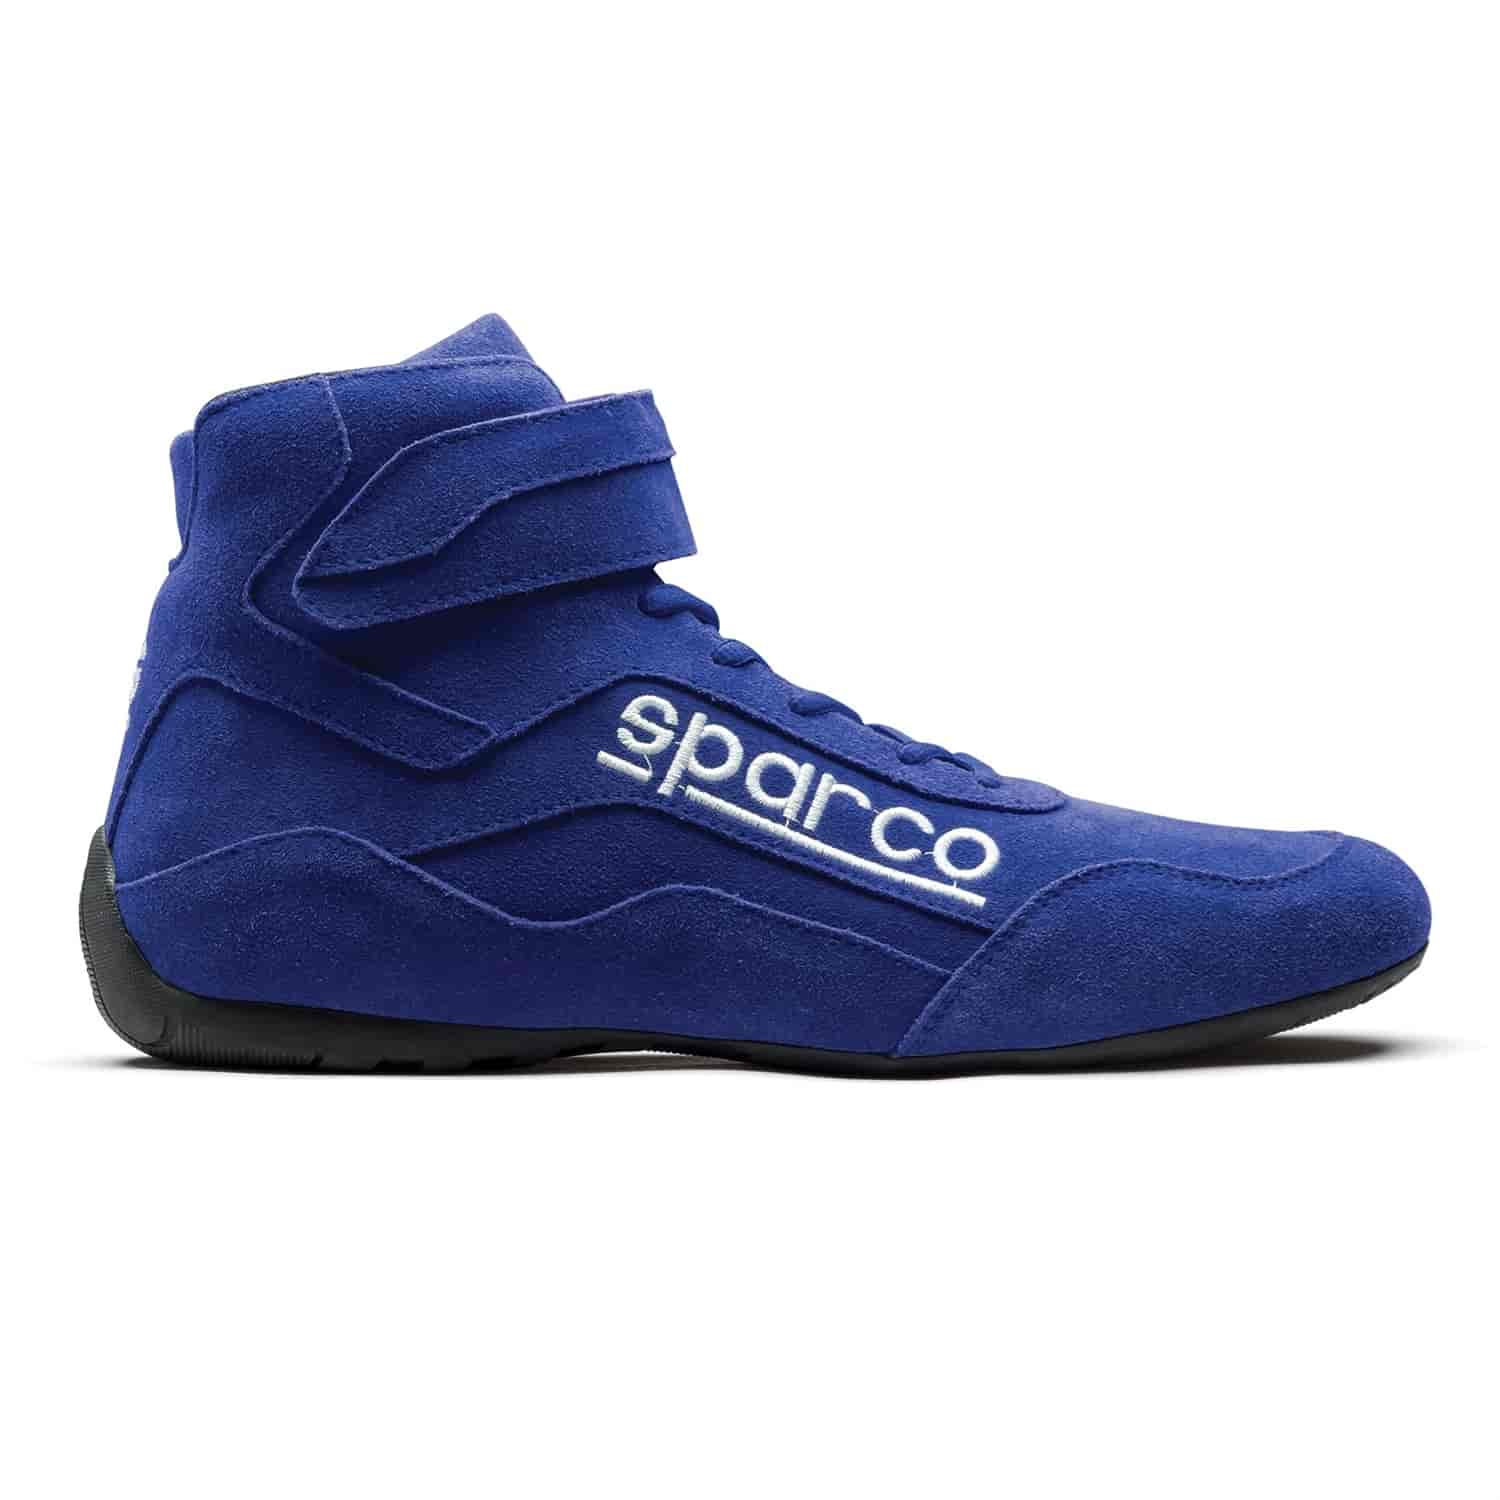 Race 2 Shoe Size 12 - Blue